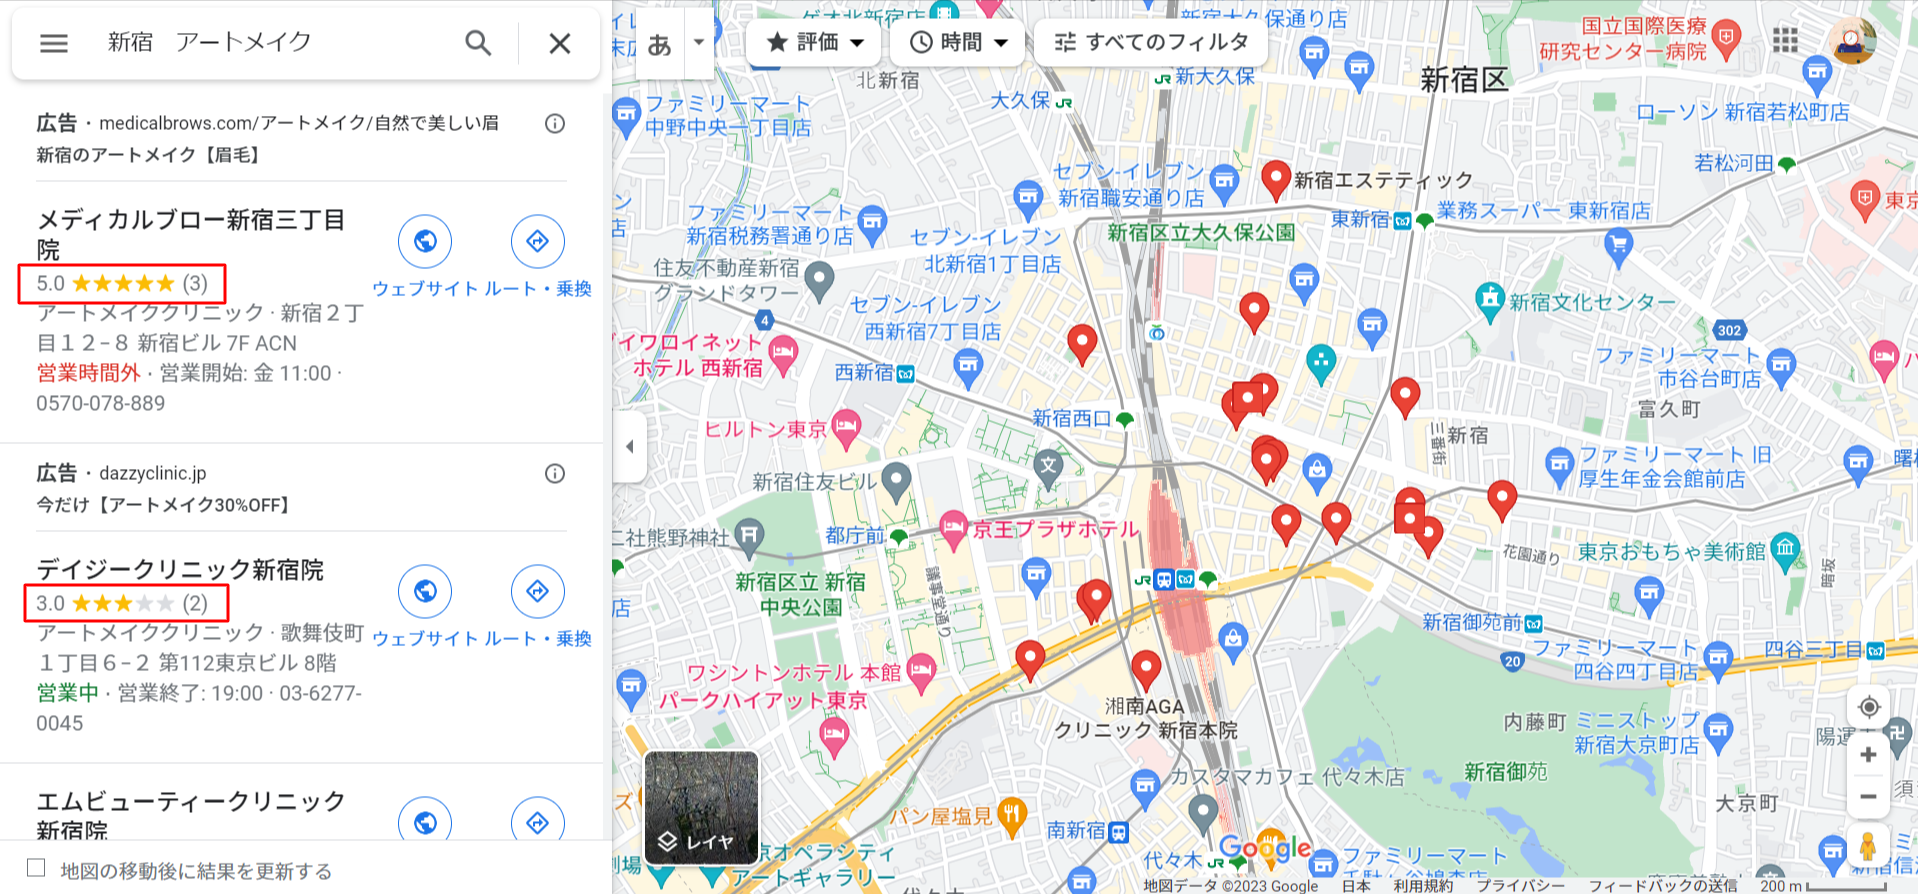 新宿-アートメイク-Google-マップ